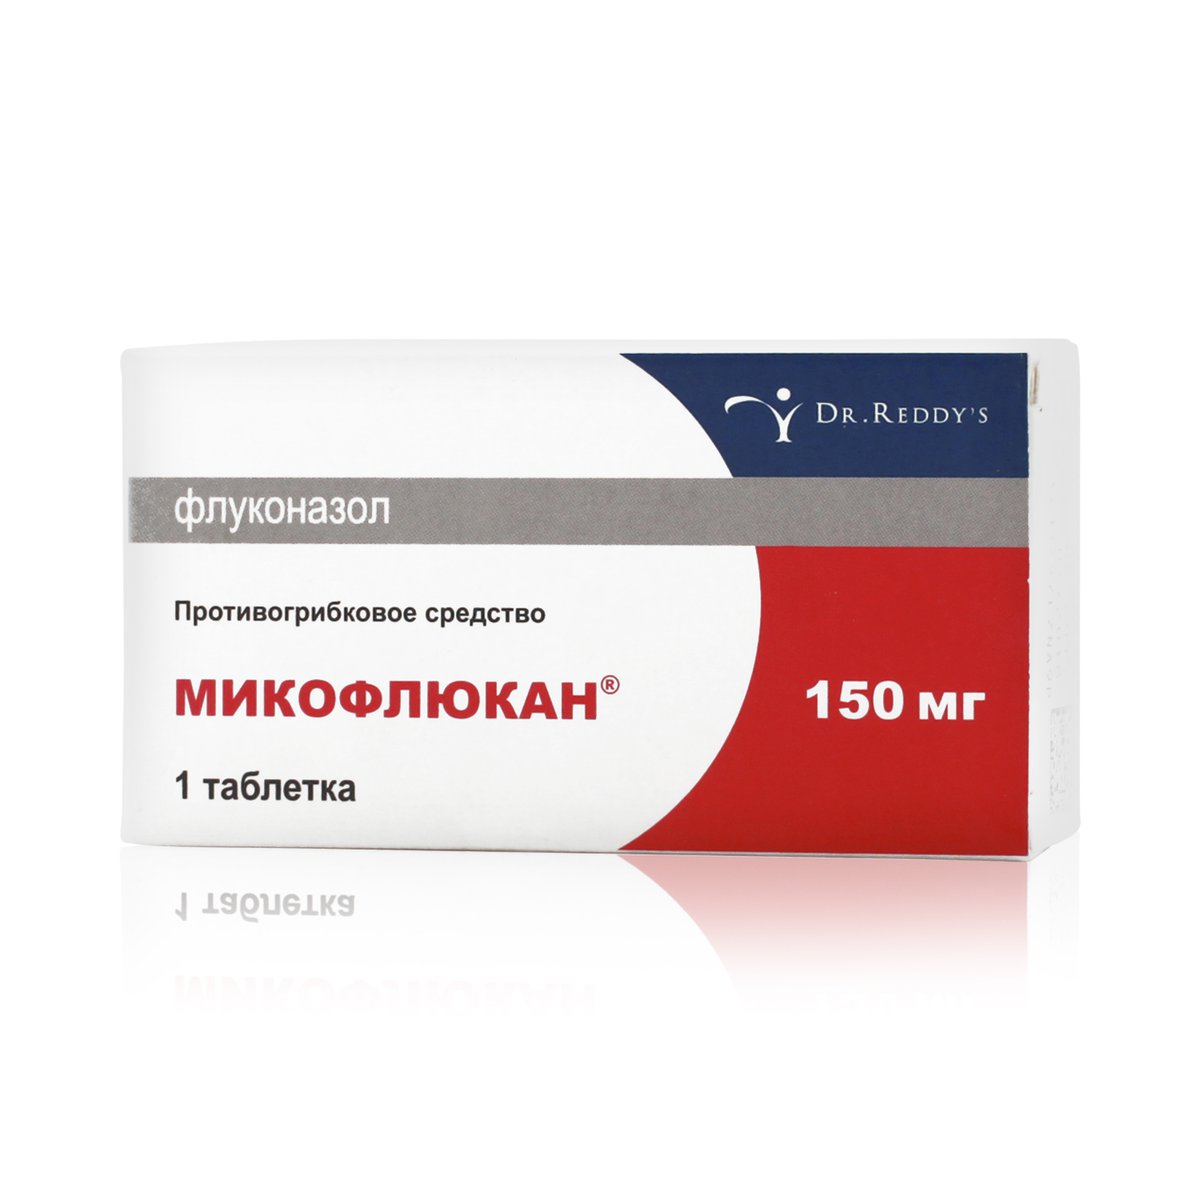 Микофлюкан (таблетки, 1 шт, 150 мг) - цена,  онлайн  .